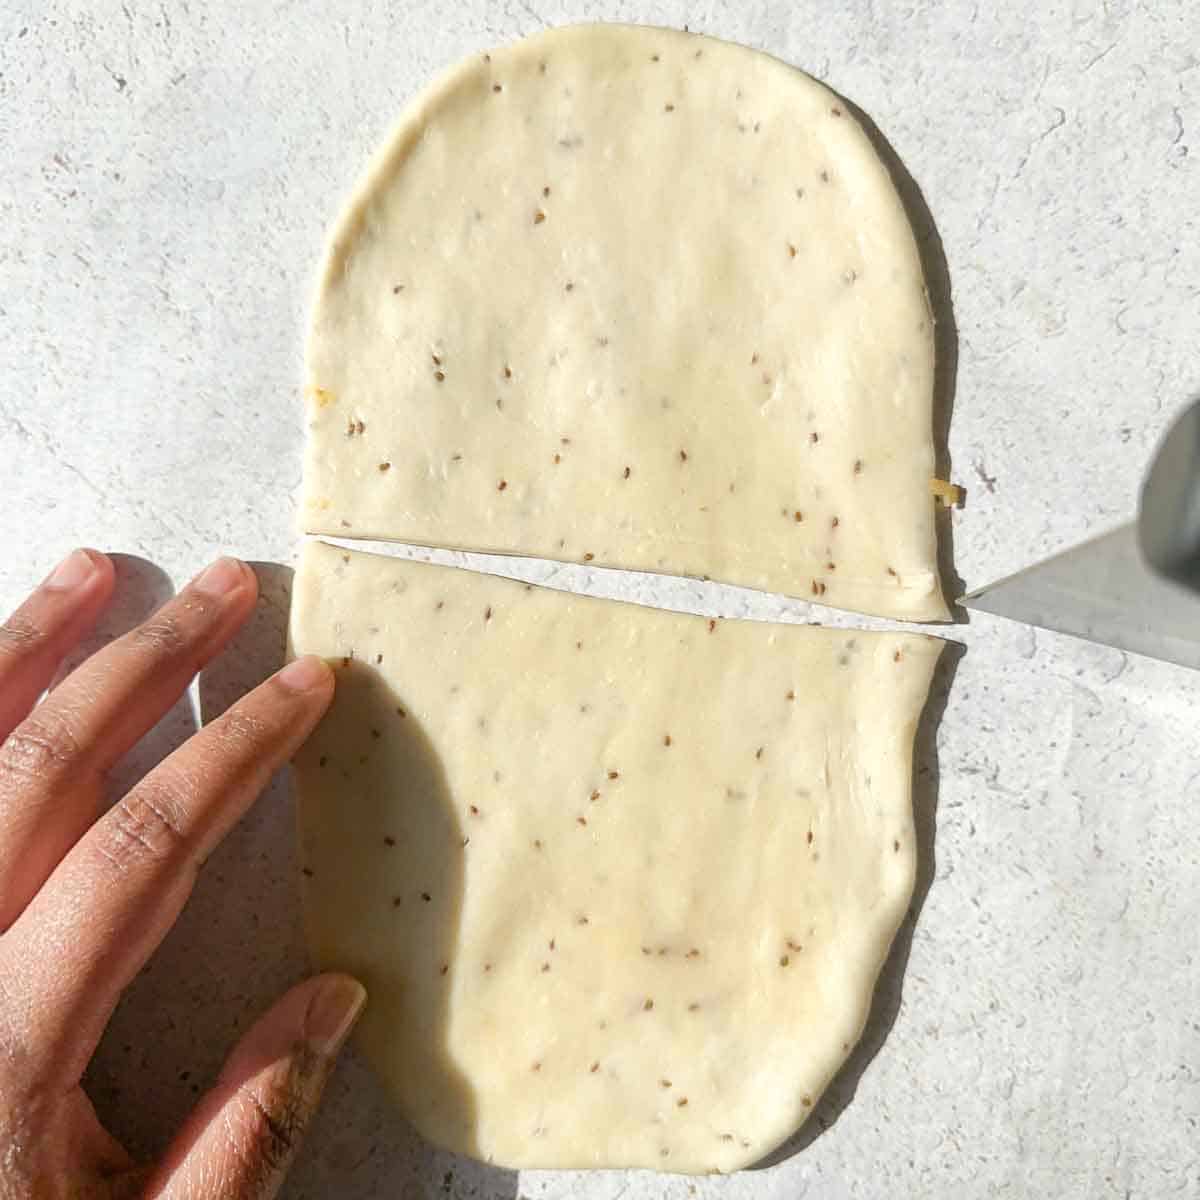 Samosa dough cut in half